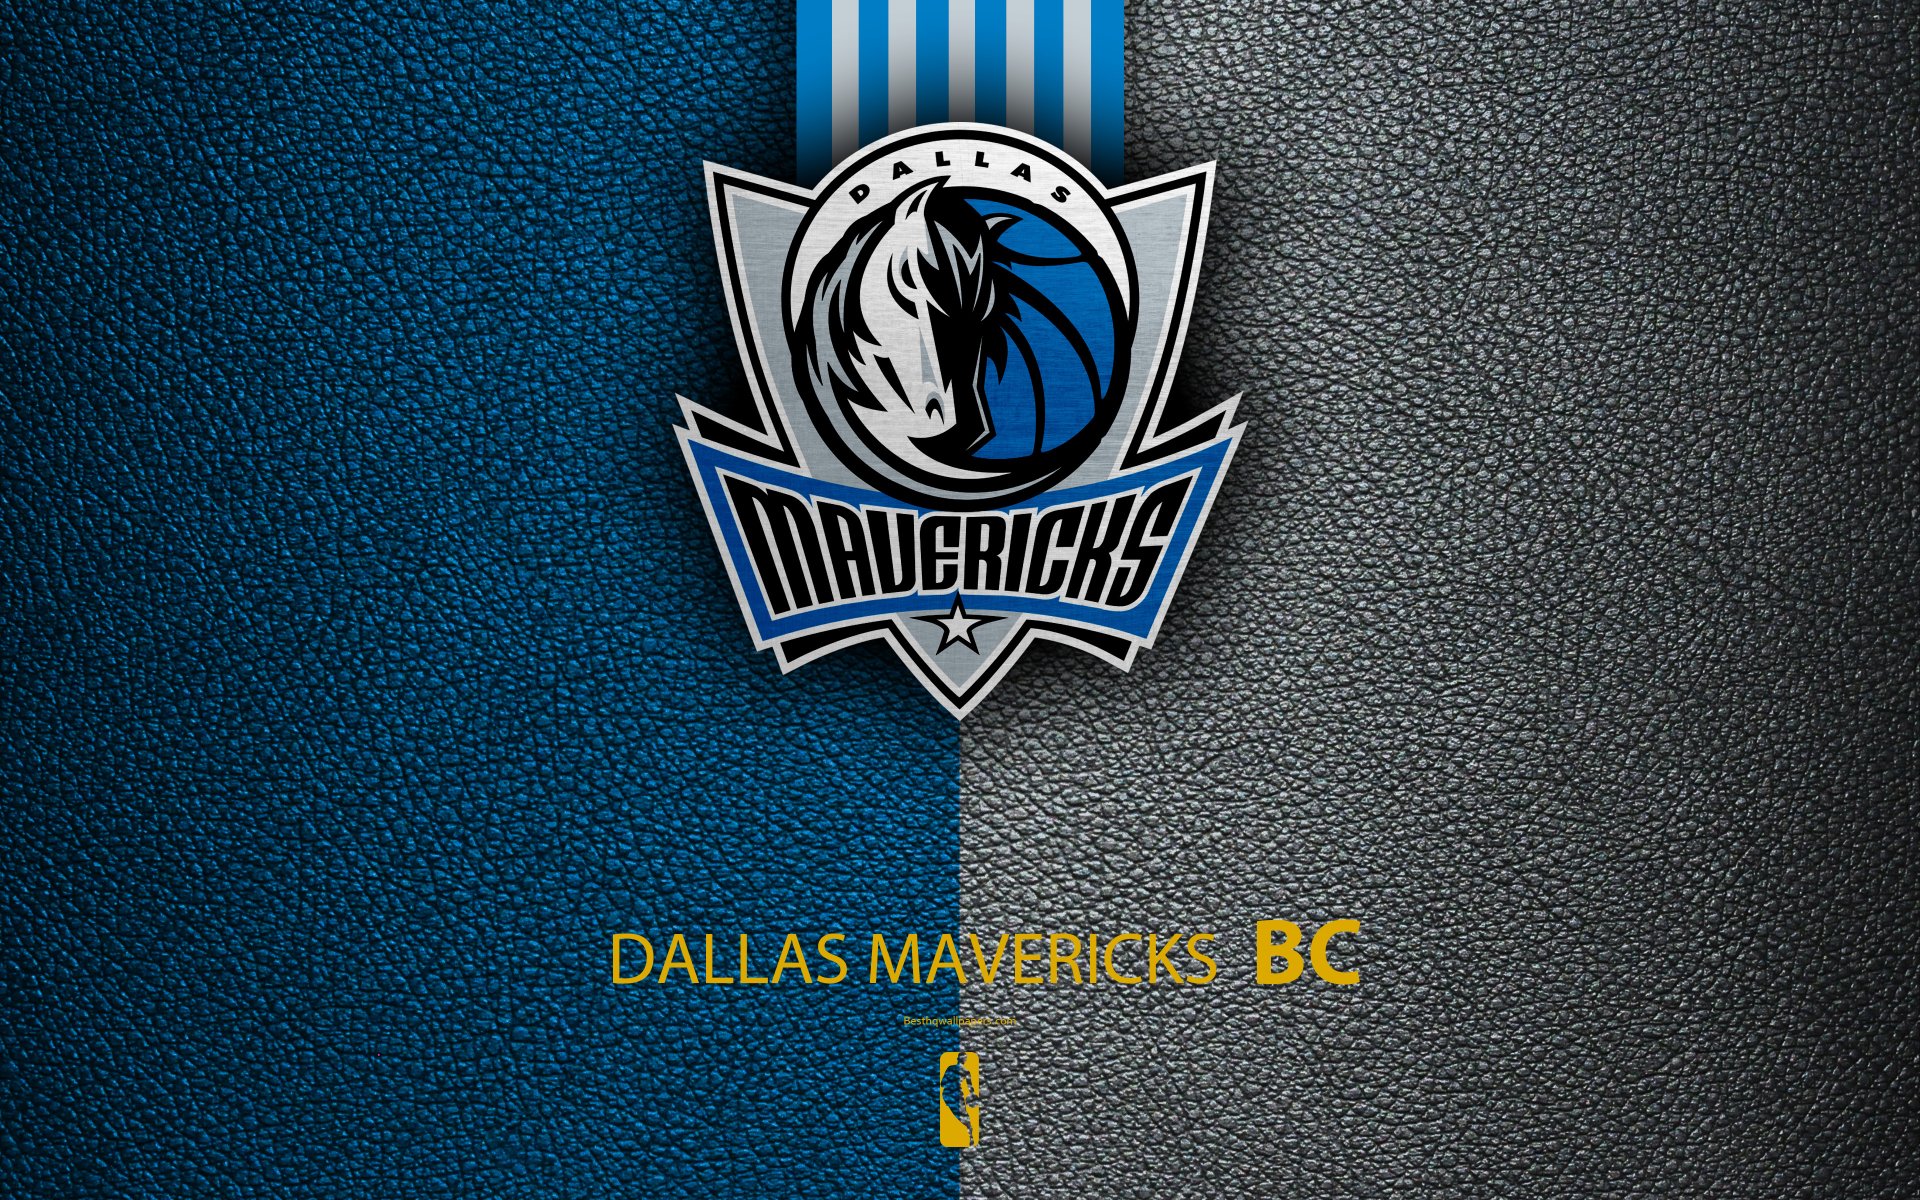 Dallas Mavericks Logo 4k Ultra 高清壁纸 | 桌面背景 | 3840x2400 | ID:971211